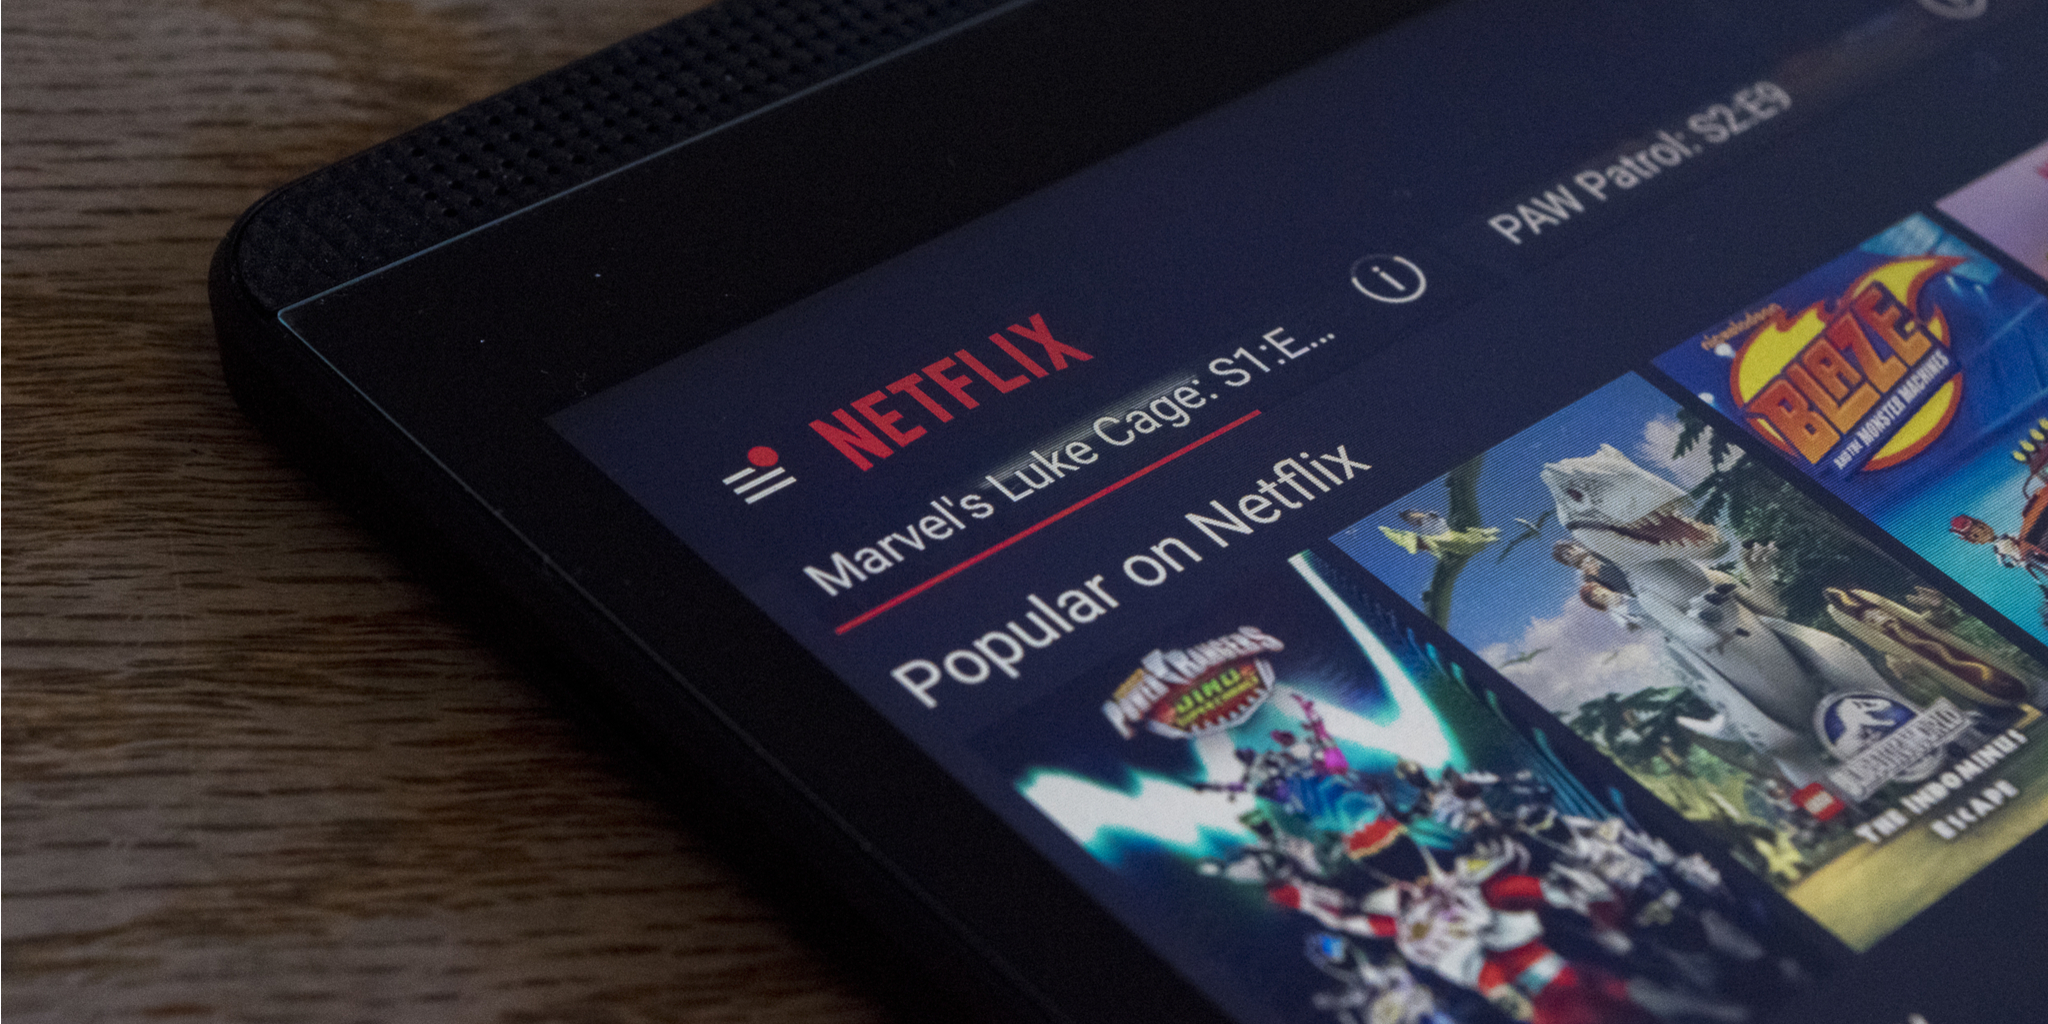 Codes de genre Netflix : Comment trouver les catégories cachées de Netflix